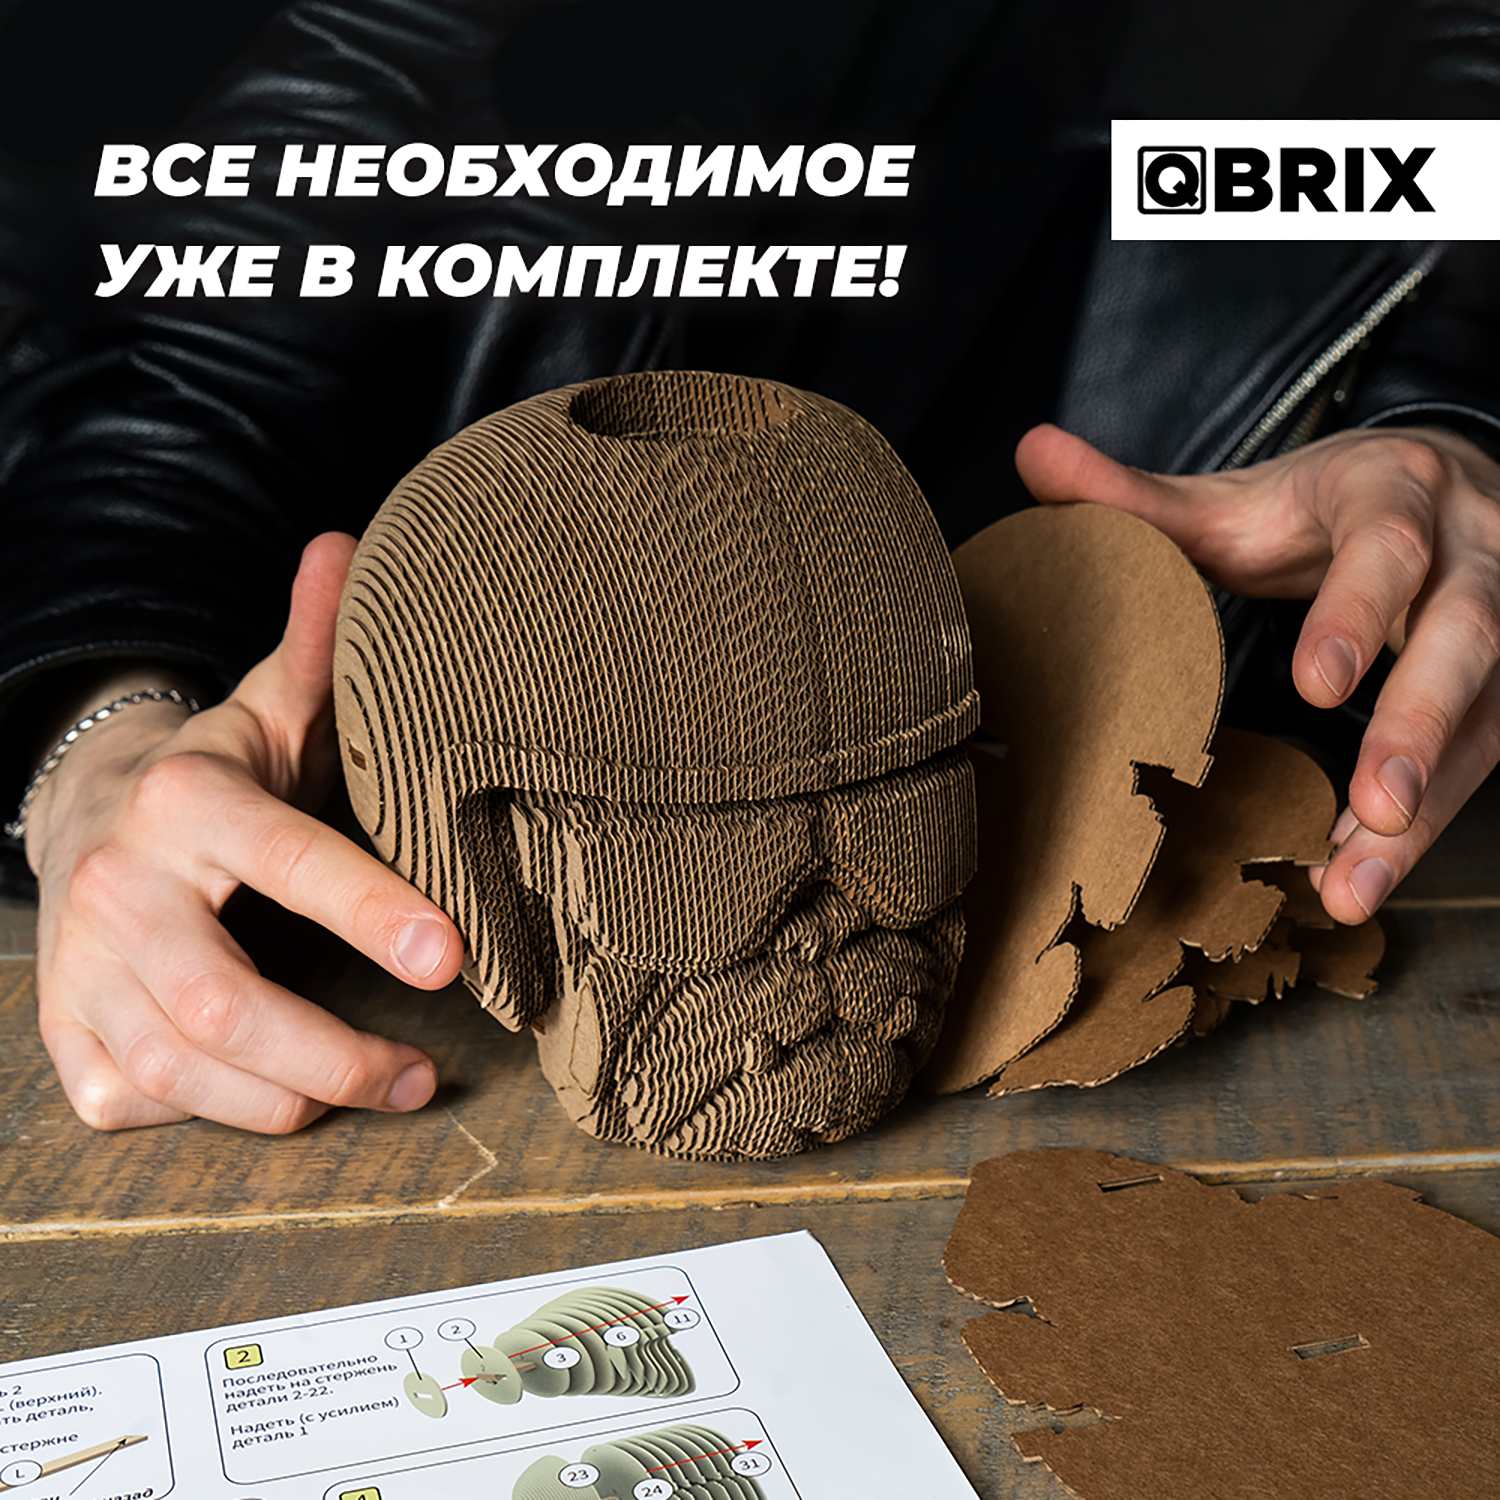 Конструктор QBRIX 3D картонный Бульдог Органайзер 20005 20005 - фото 6